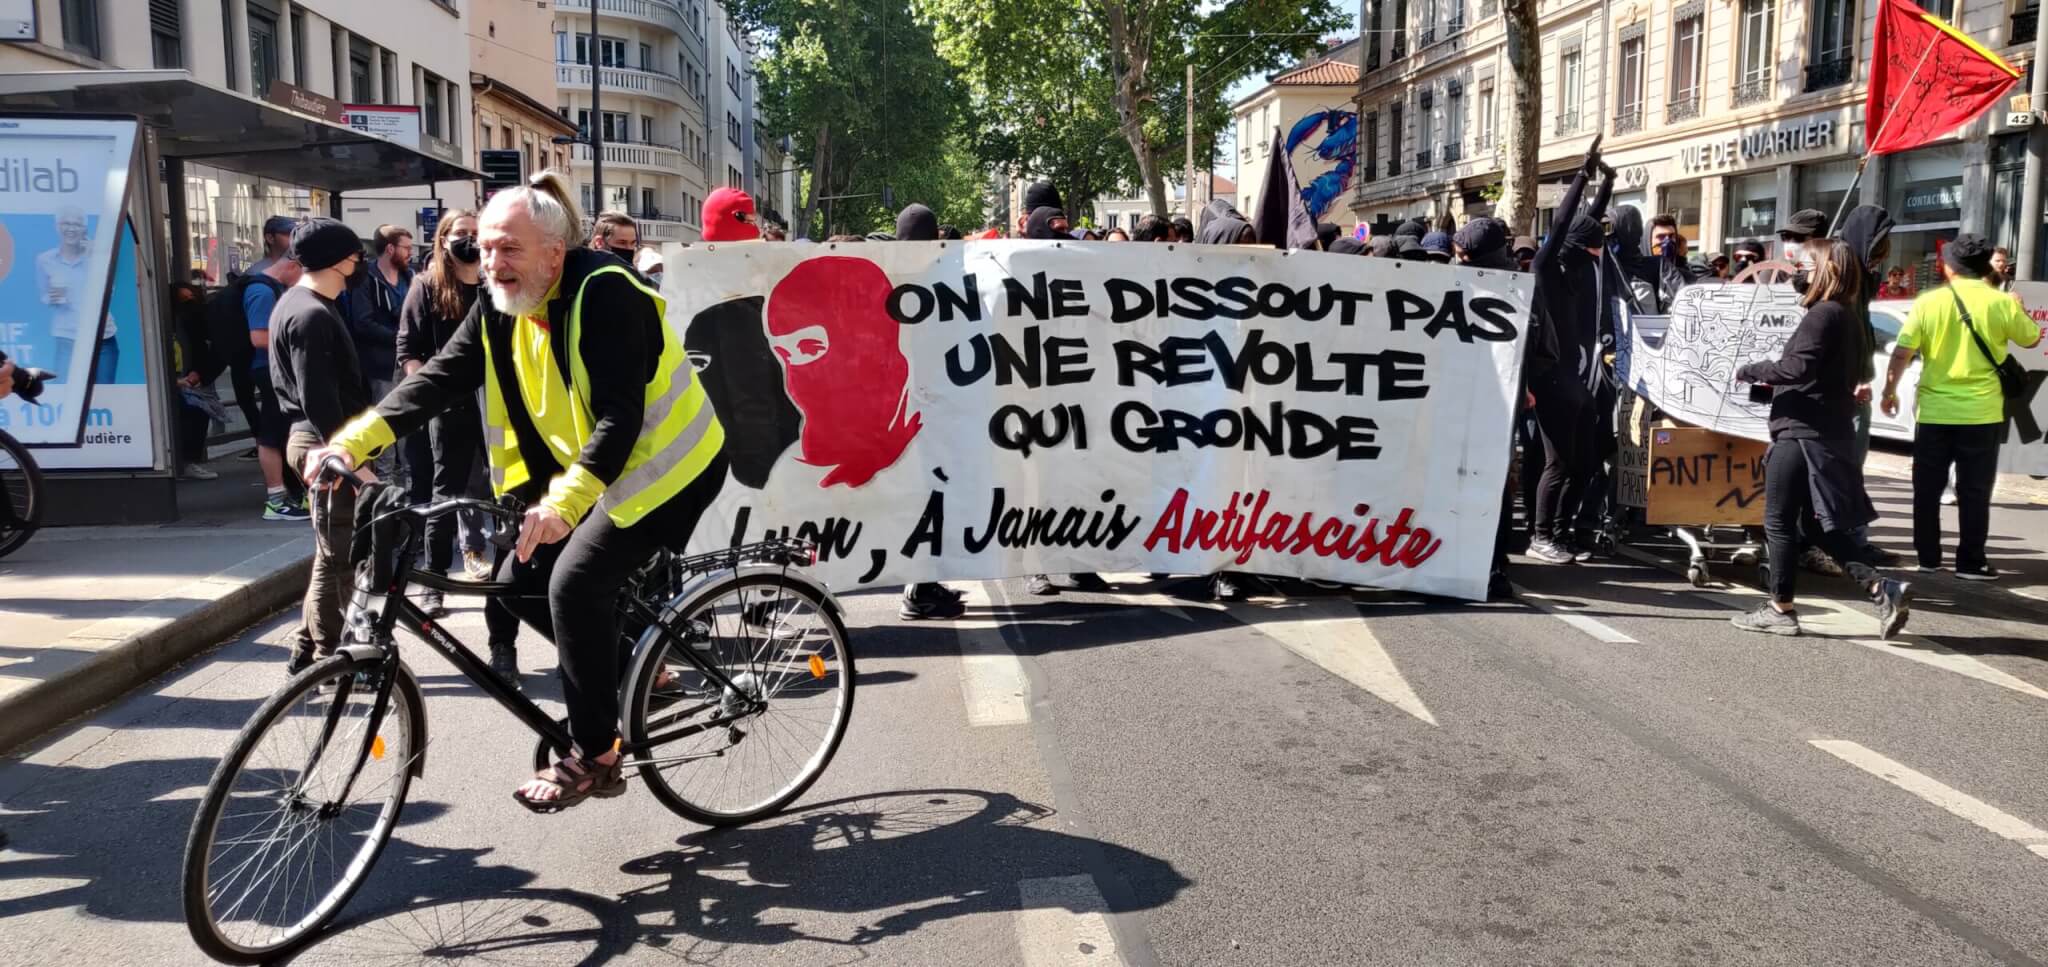 A Lyon, des affrontements entre antifascistes sur fond d’opposition politique